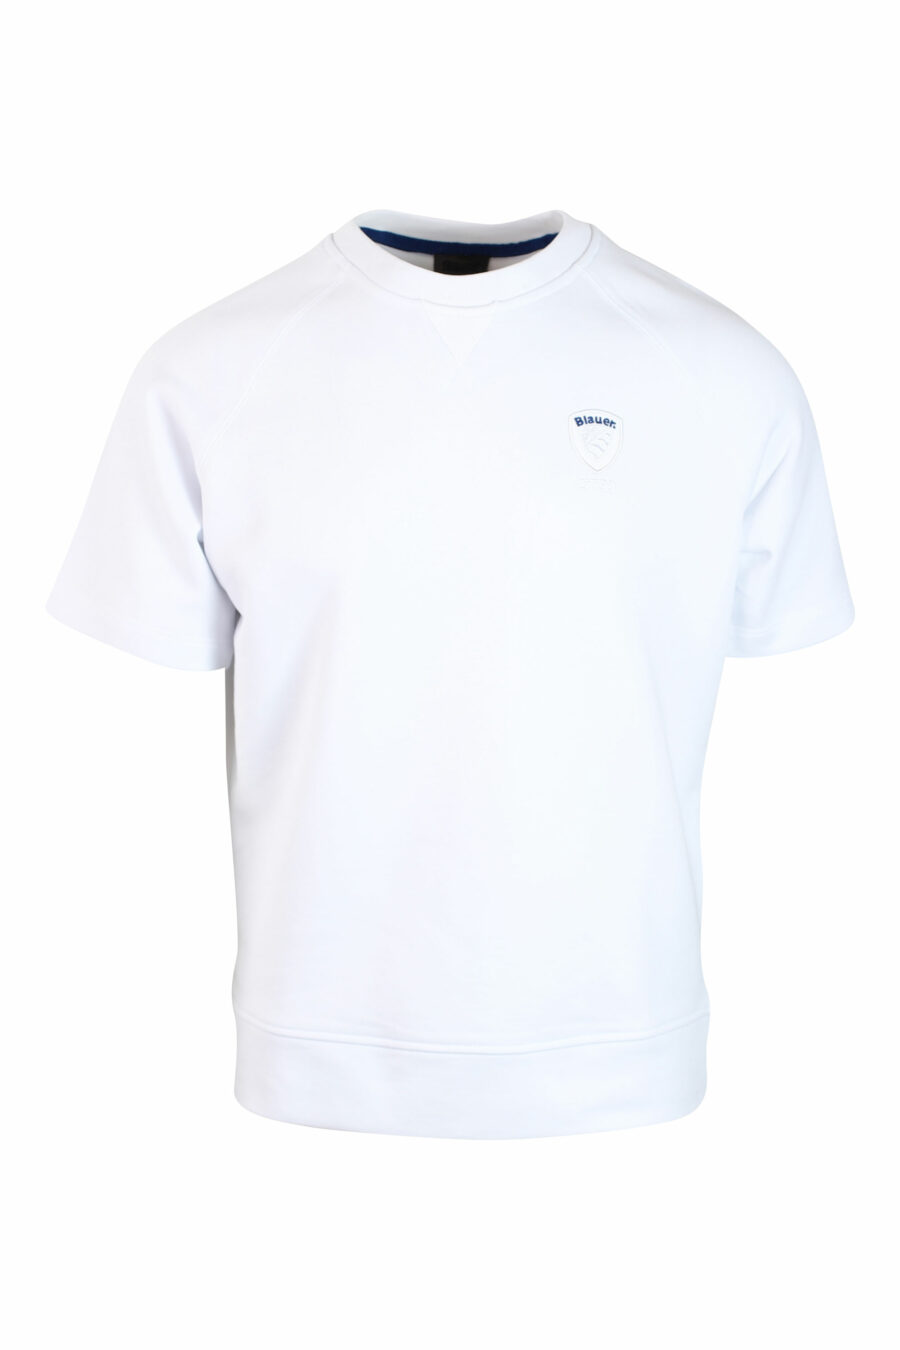 Camiseta blanca con minilogo escudo monocromático bordado - IMG 0125